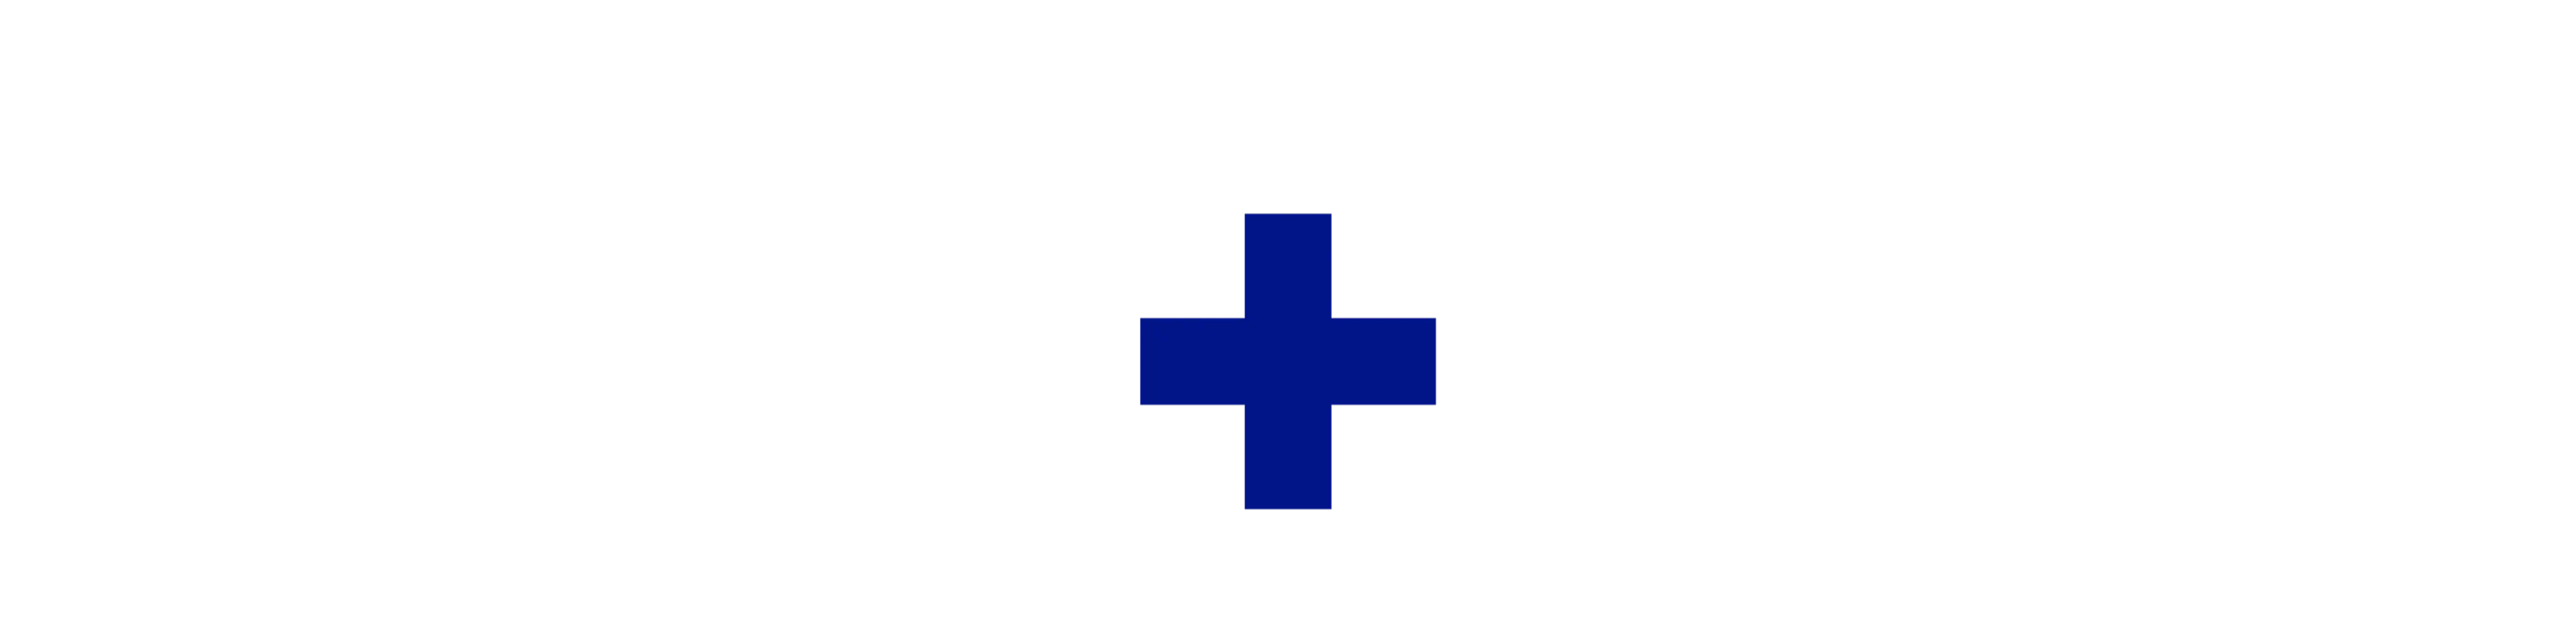 emuaid logo en forme de croix